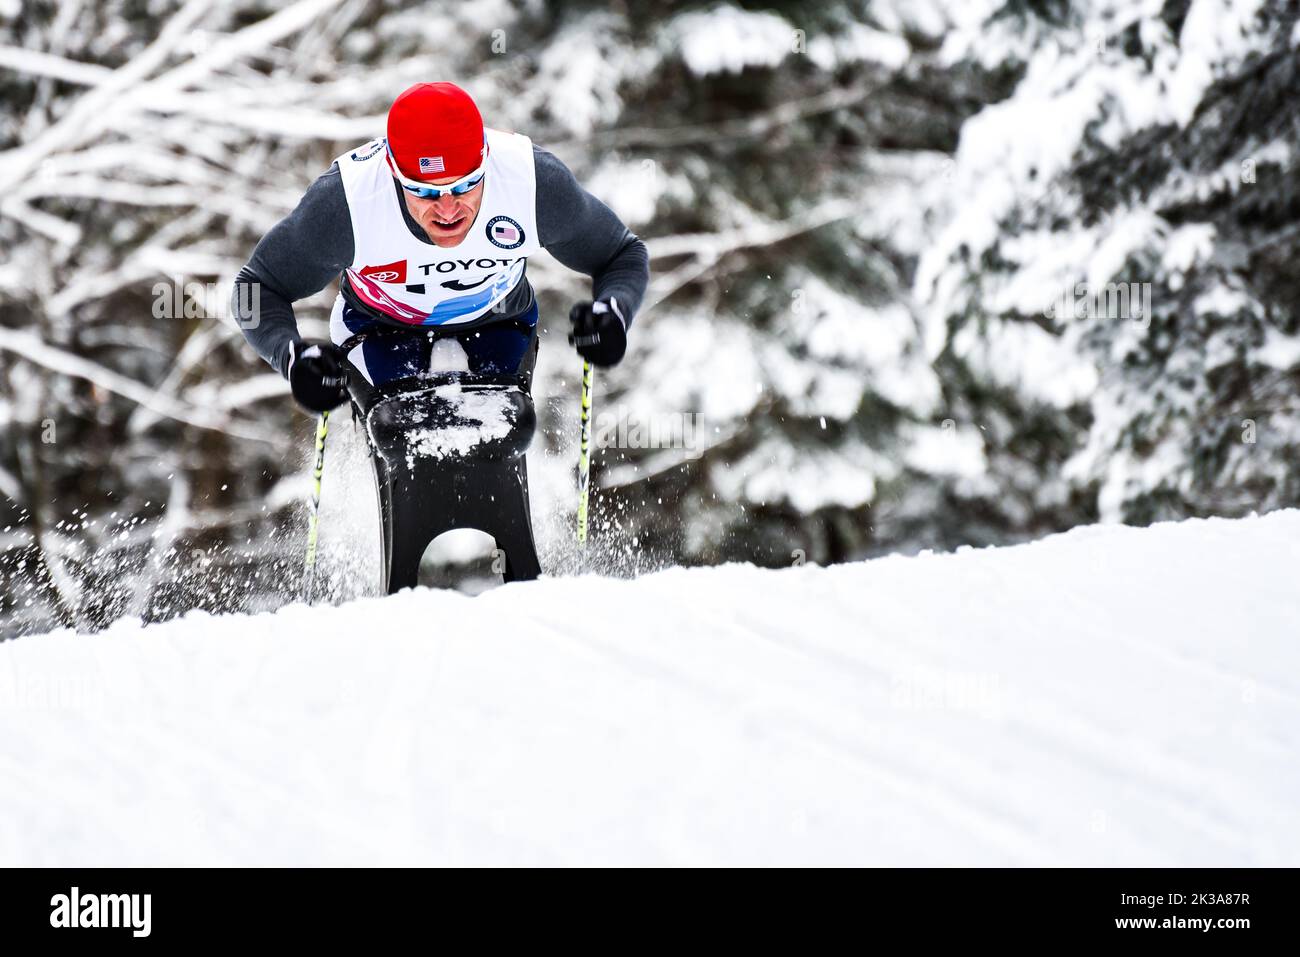 L'atleta Dan Cnossen al 2019° campionato nazionale di sci di fondo allo U.S. Paralympic al Craftsbury Outdoor Center, Vermont, USA. Foto Stock